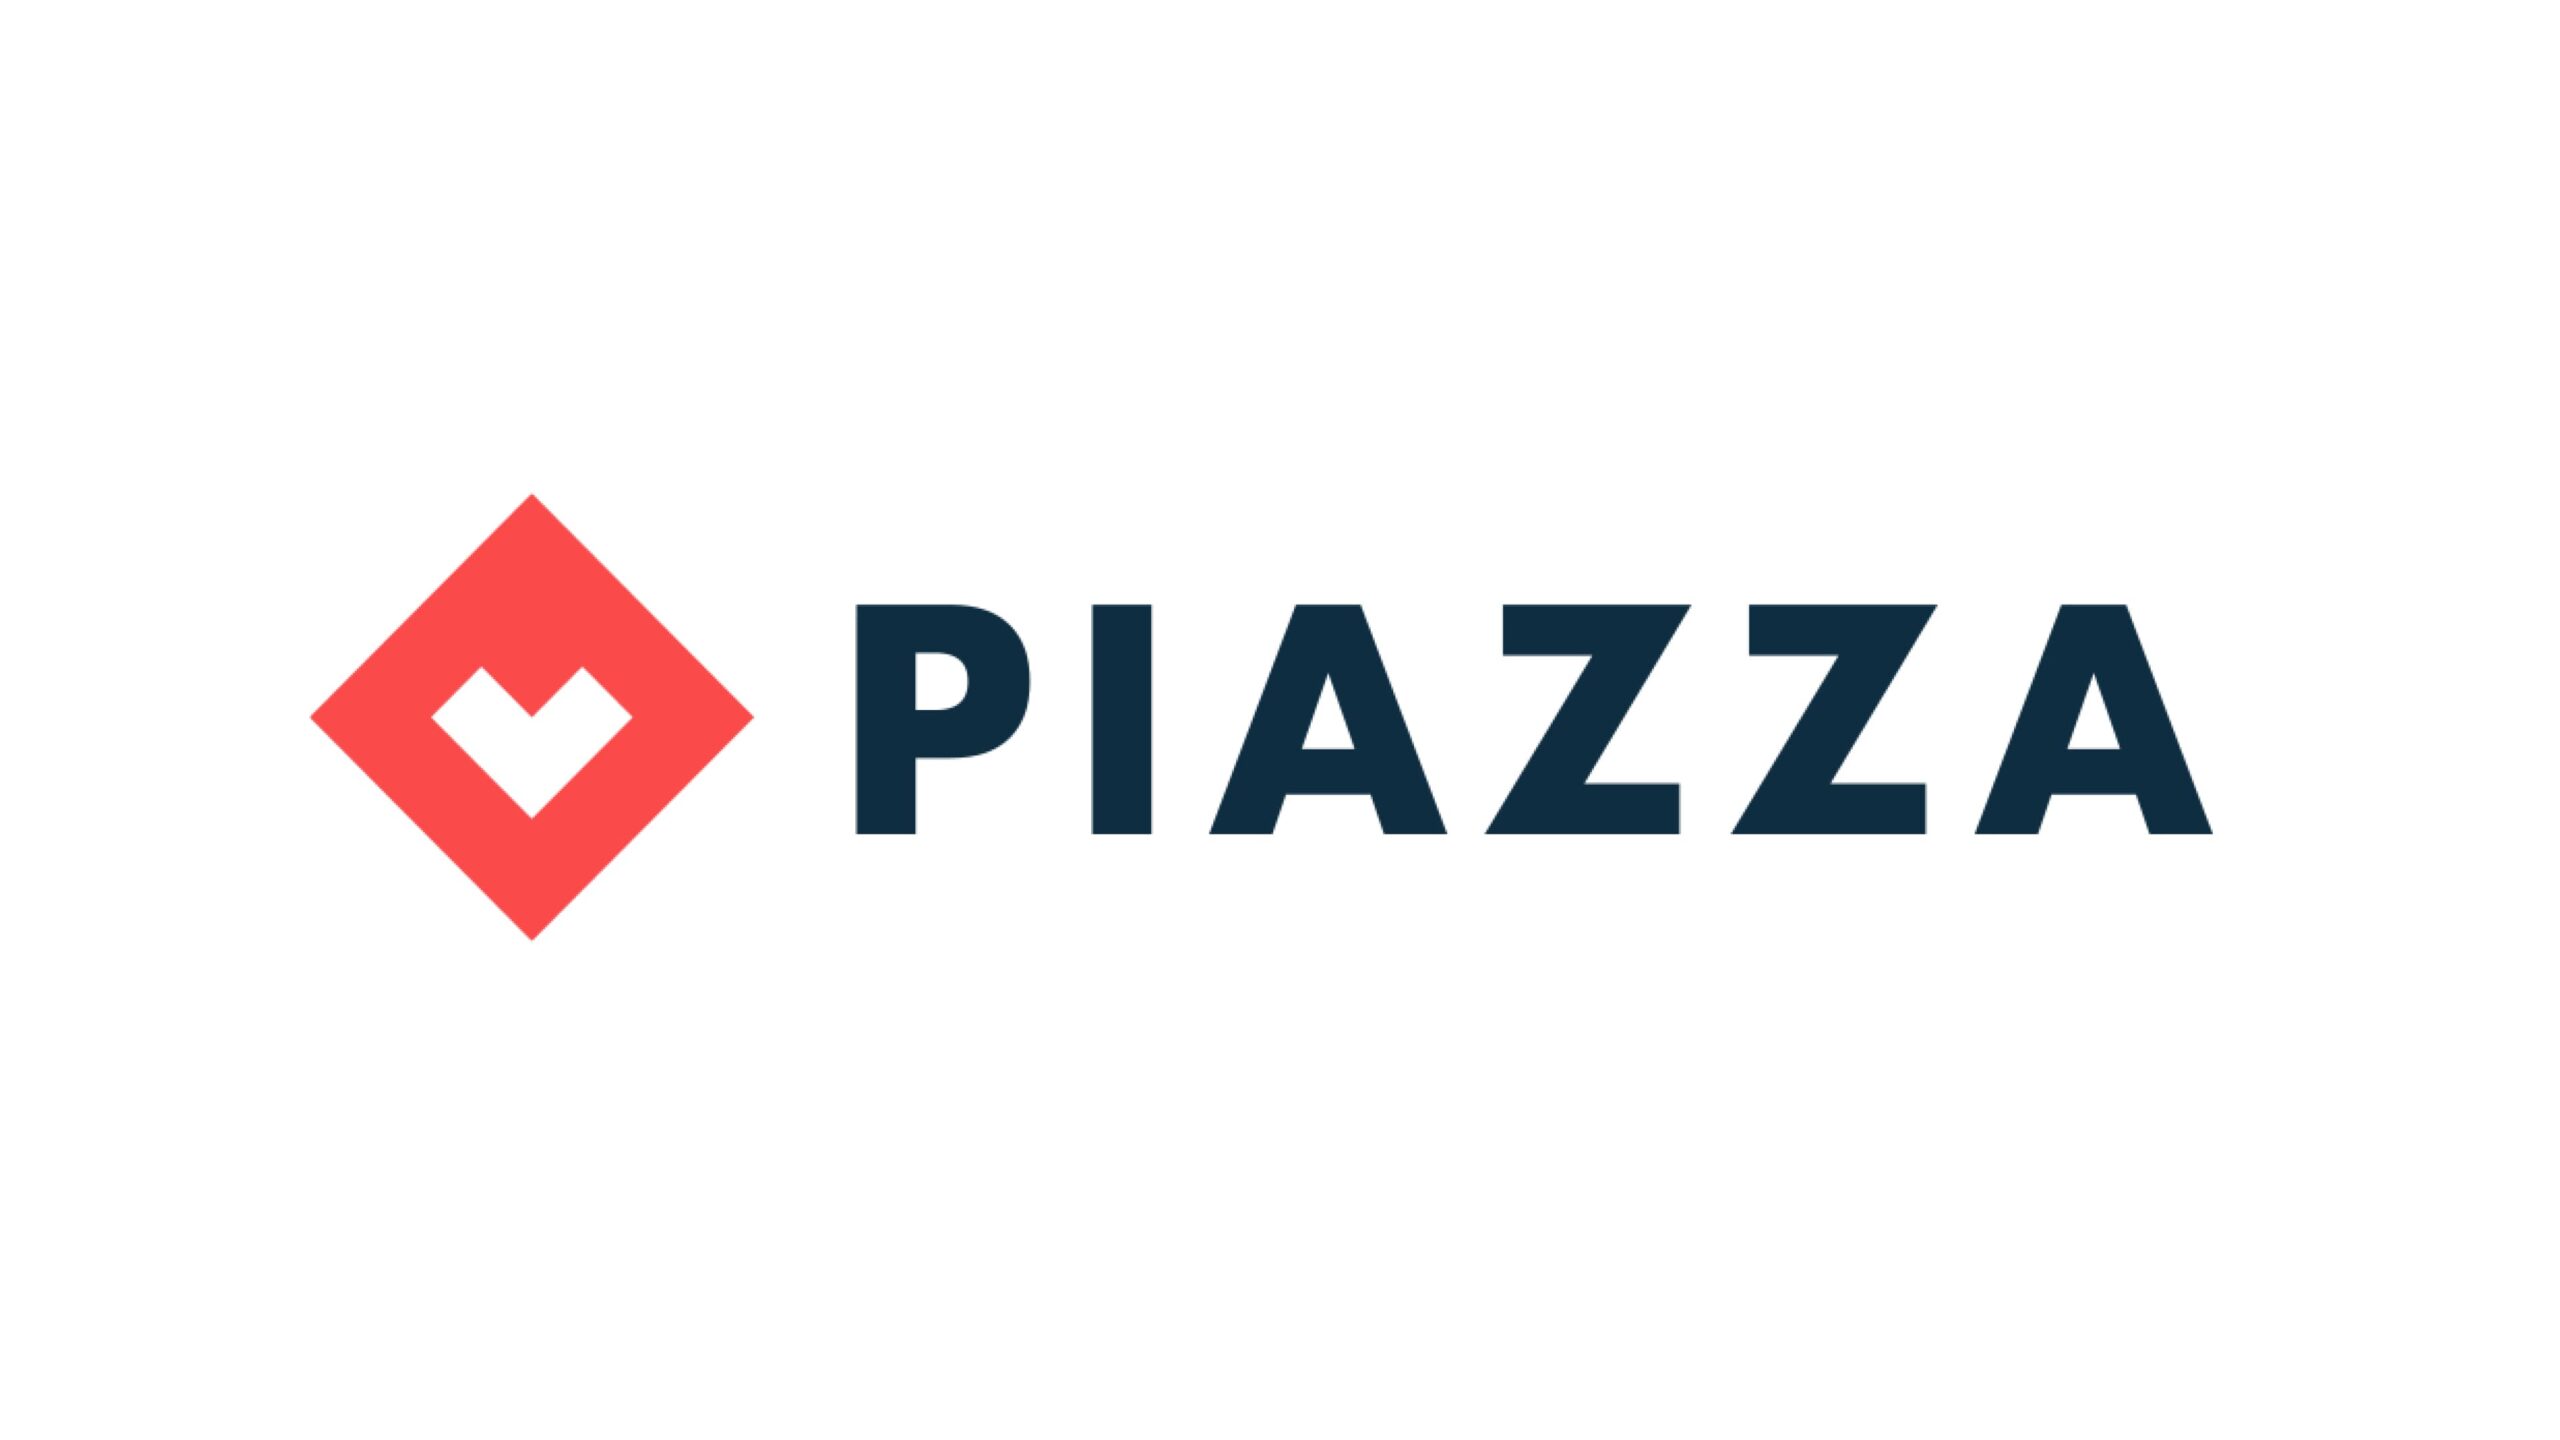 PIAZZA株式会社、1.2億円を調達し、総額は4.8億円に。新たな投資家を迎え、デジタルとリアルの融合による街づくりを加速